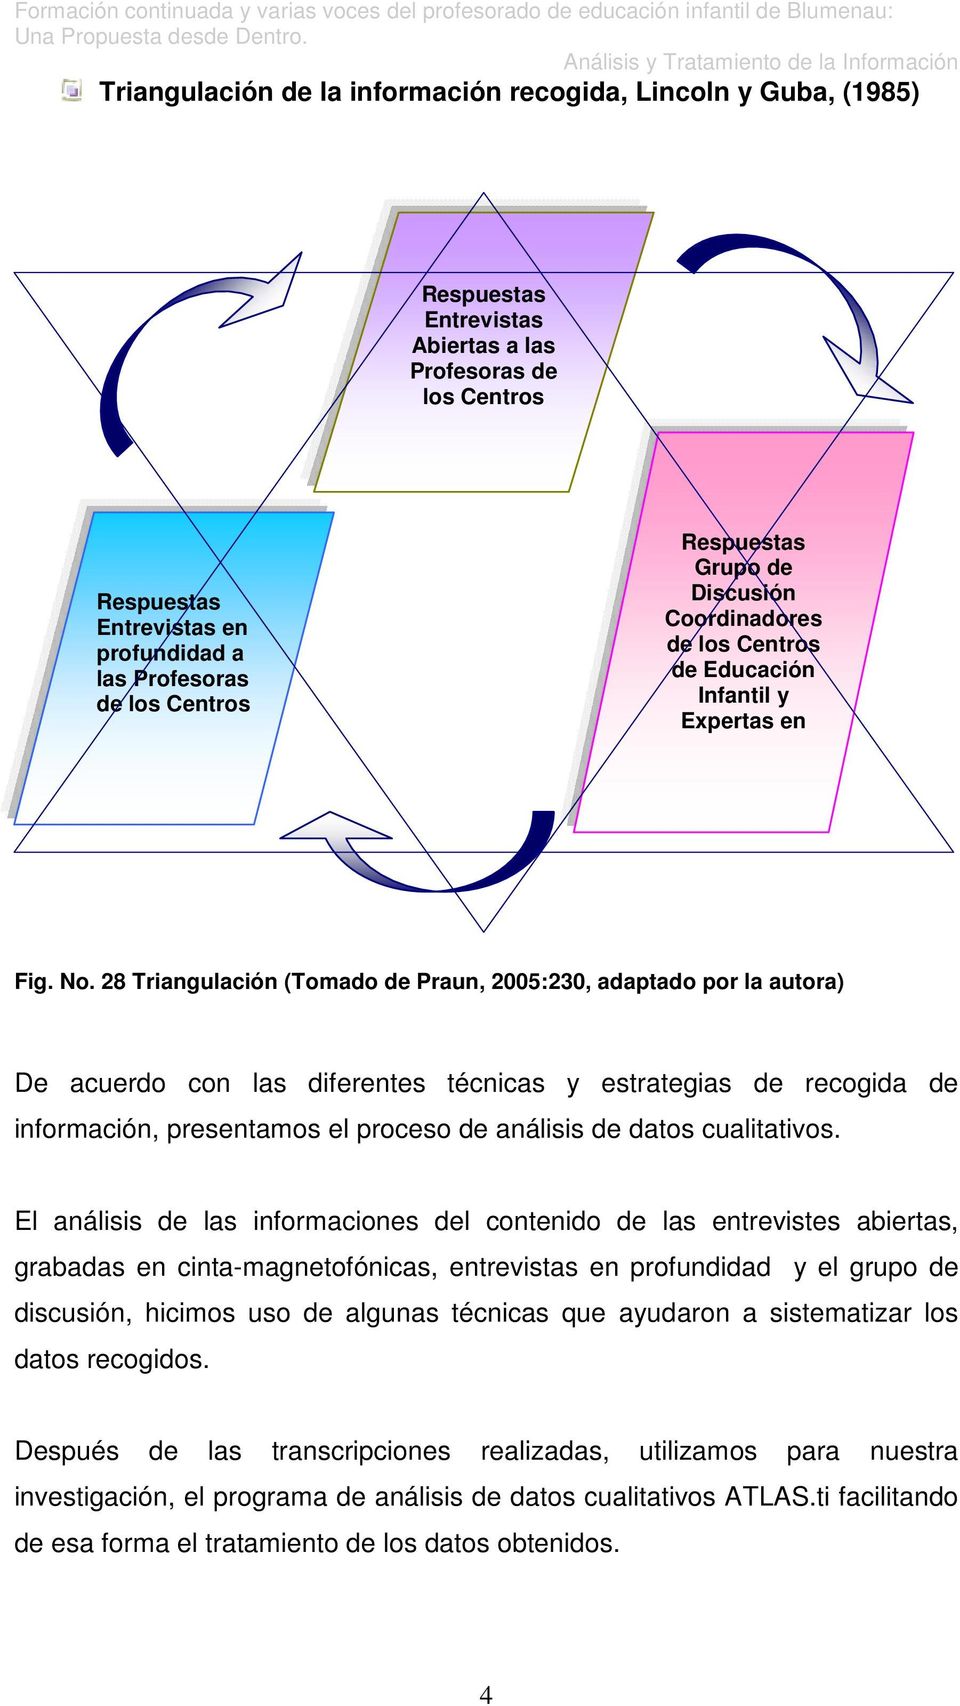 28 Triangulación (Tomado de Praun, 2005:230, adaptado por la autora) De acuerdo con las diferentes técnicas y estrategias de recogida de información, presentamos el proceso de análisis de datos